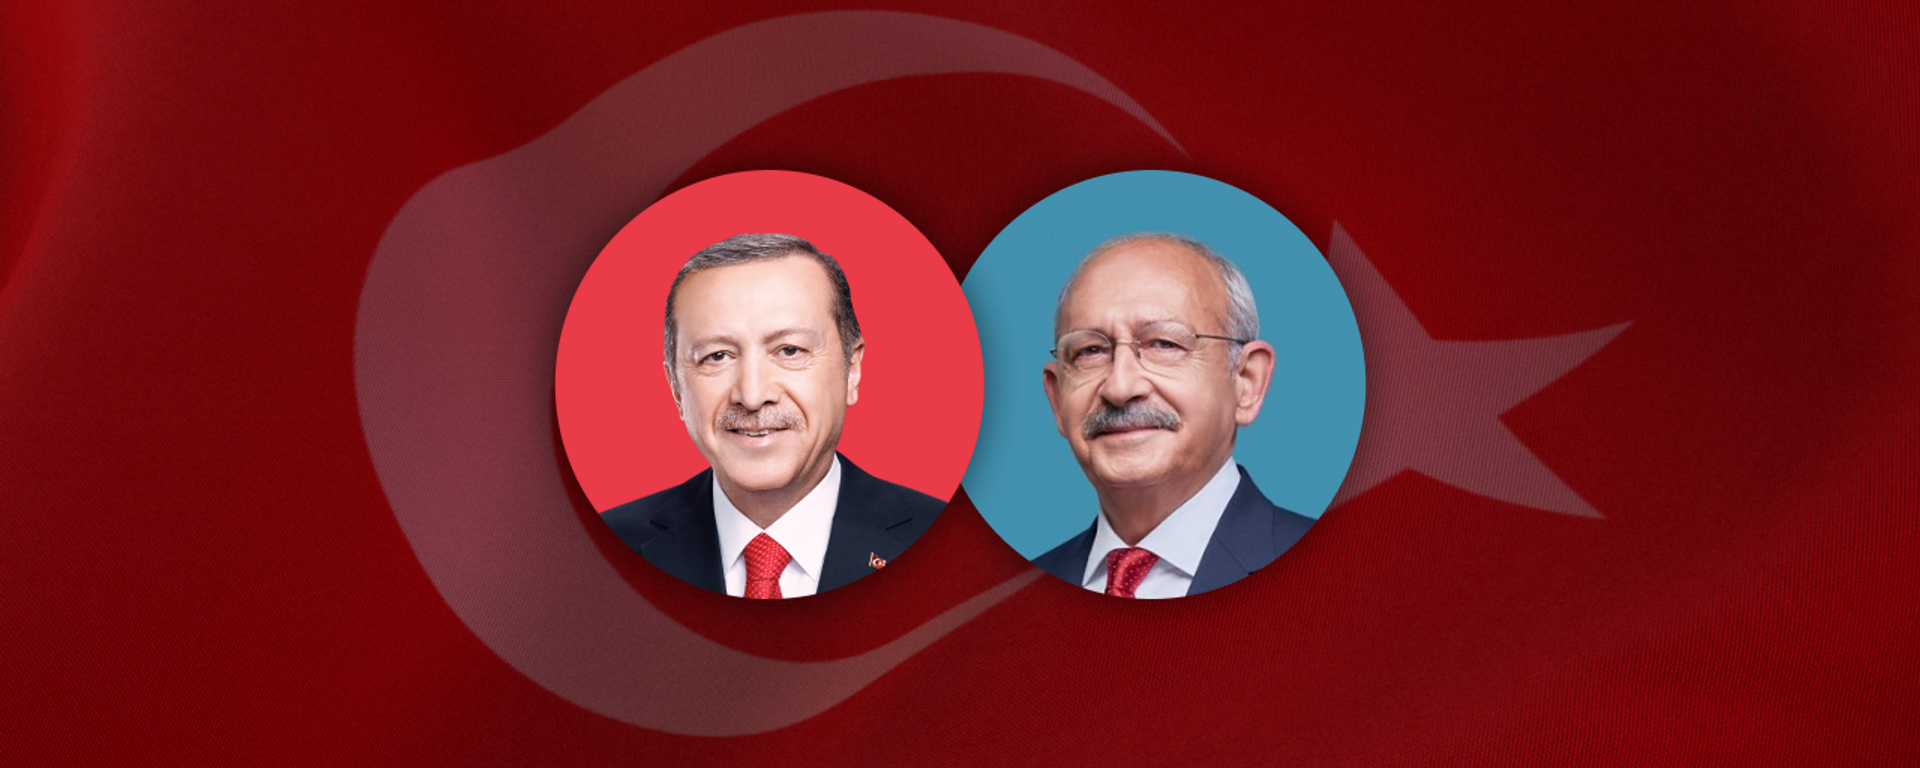 Elections in Turkey 2023 - Sputnik International, 1920, 28.05.2023